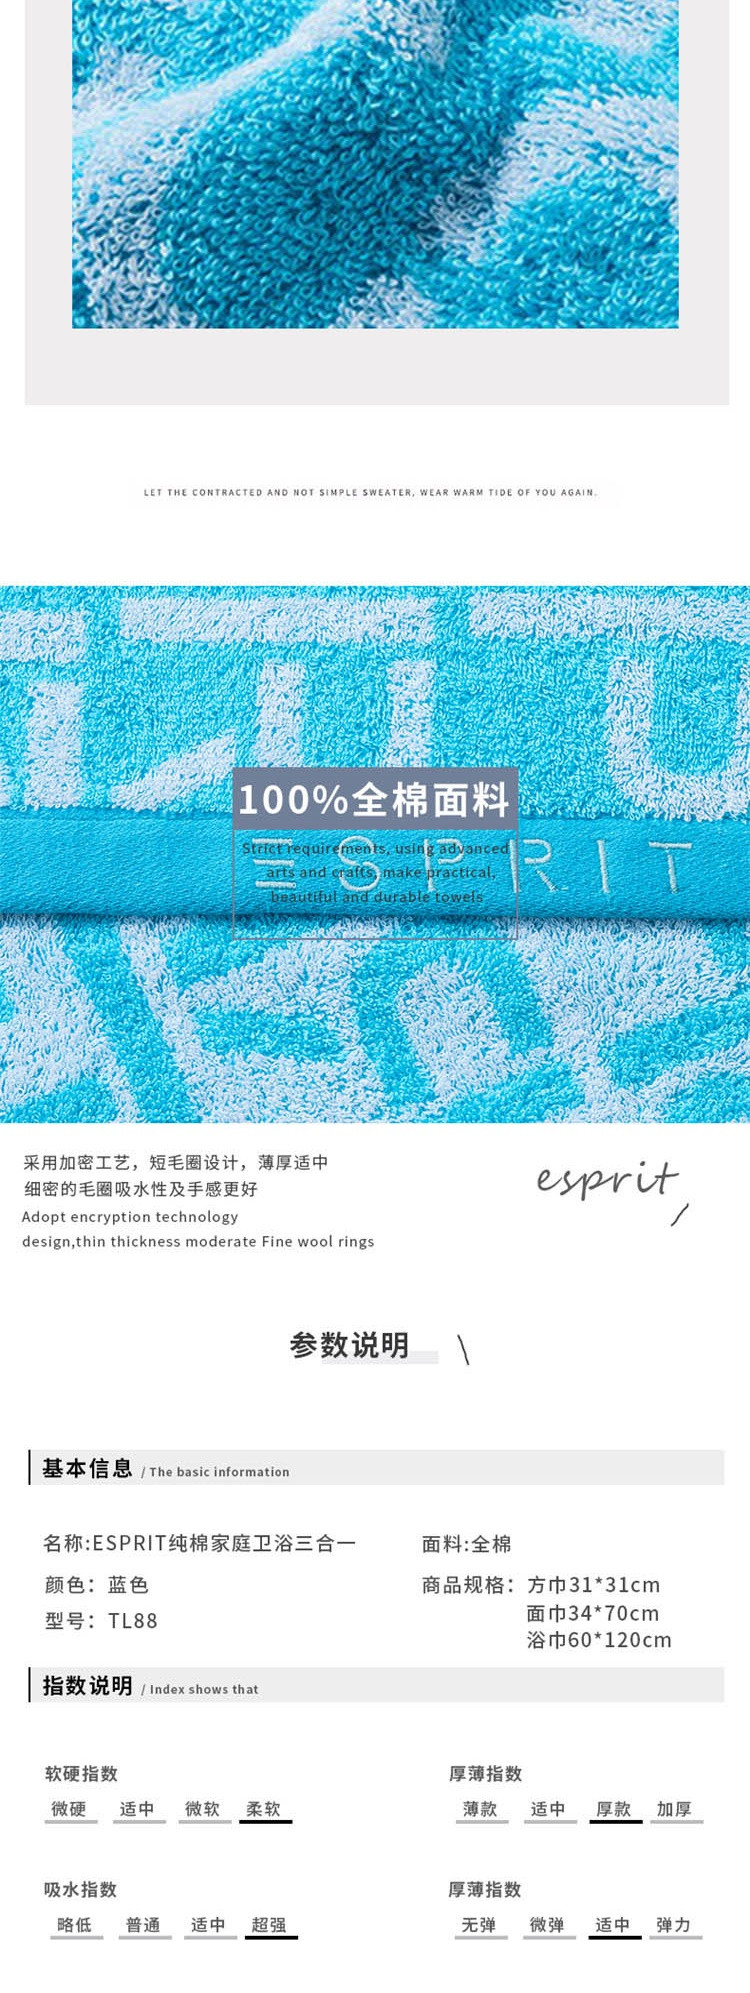 ESPRIT 纯棉三合一毛巾 TL88 蓝色